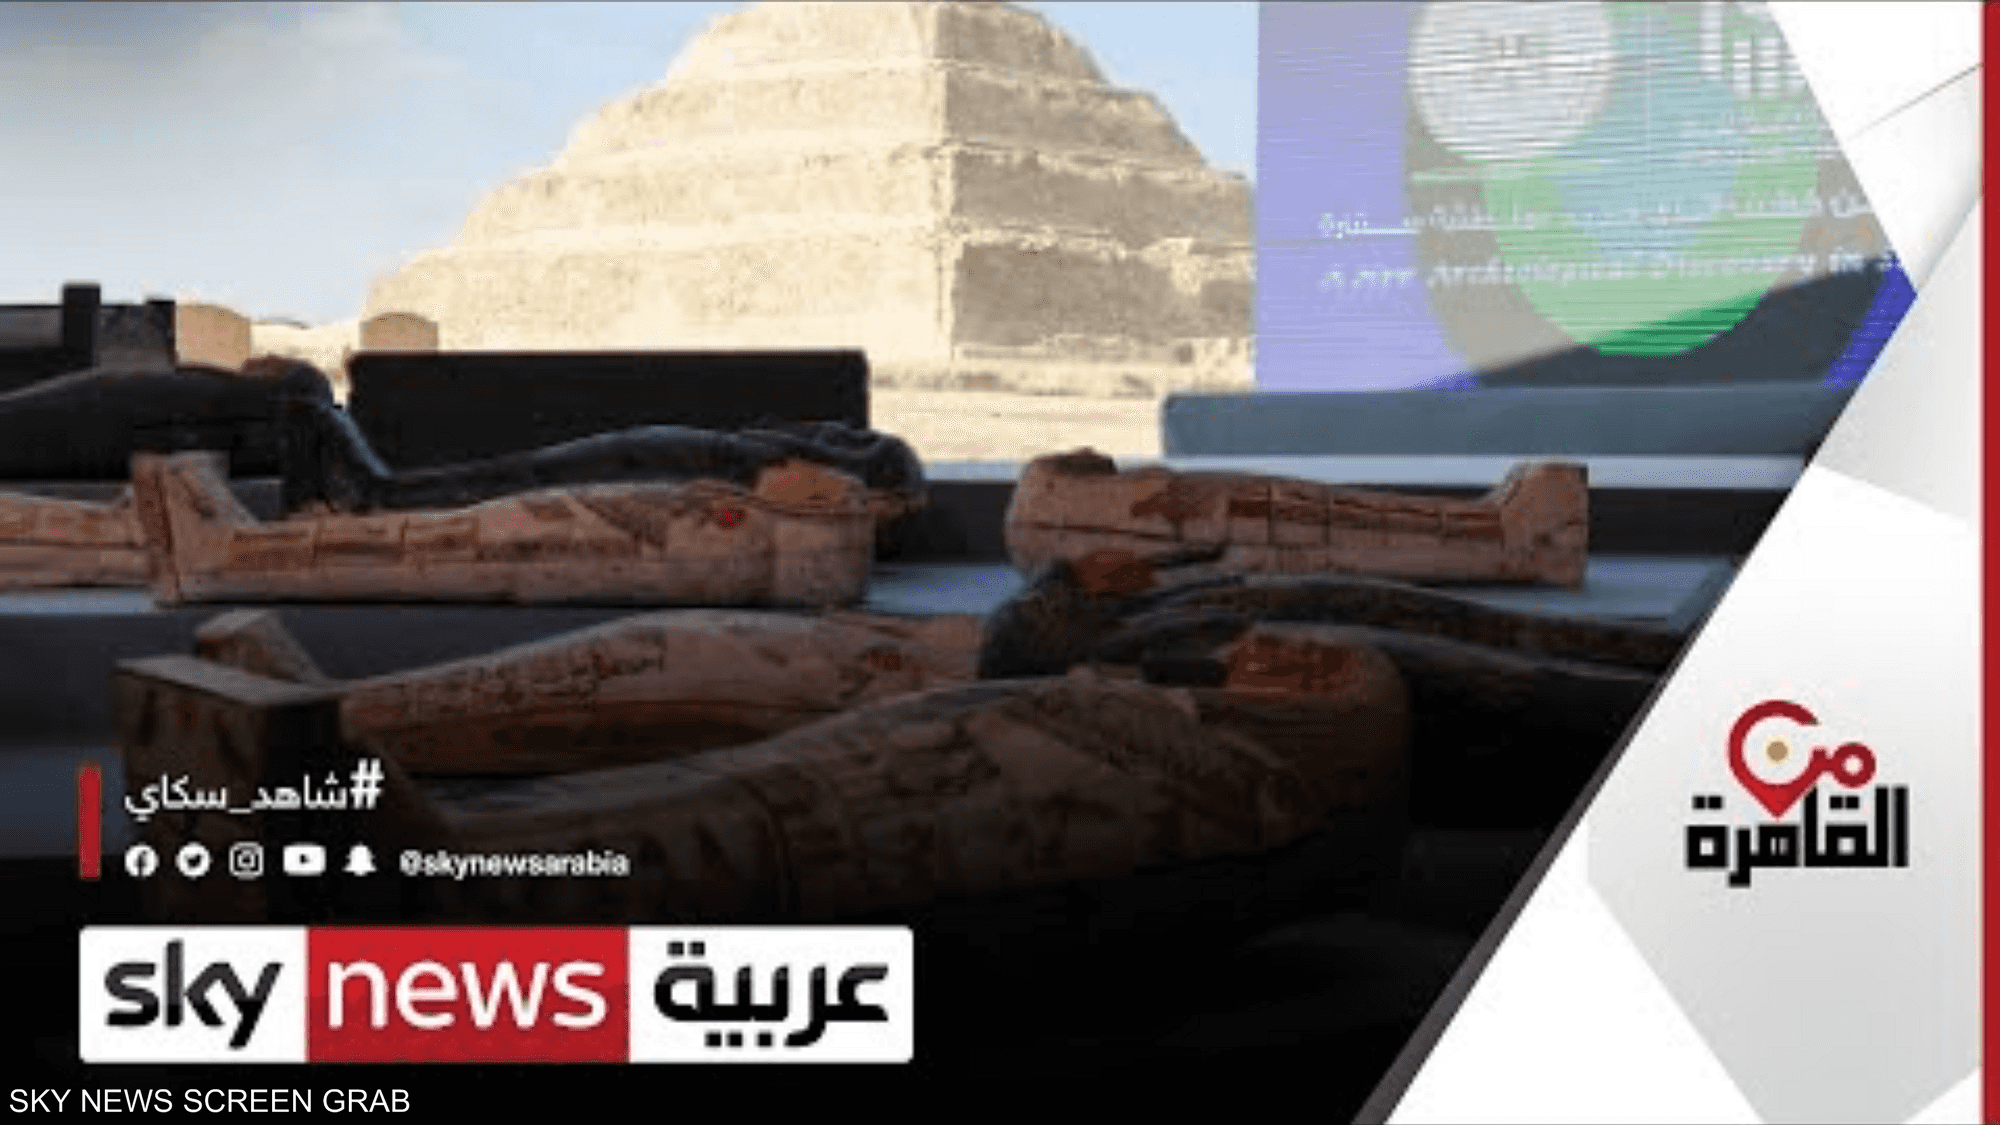 مصر تعلن عن اكتشاف أثري جديد بمنطقة سقارة.. ما التفاصيل؟